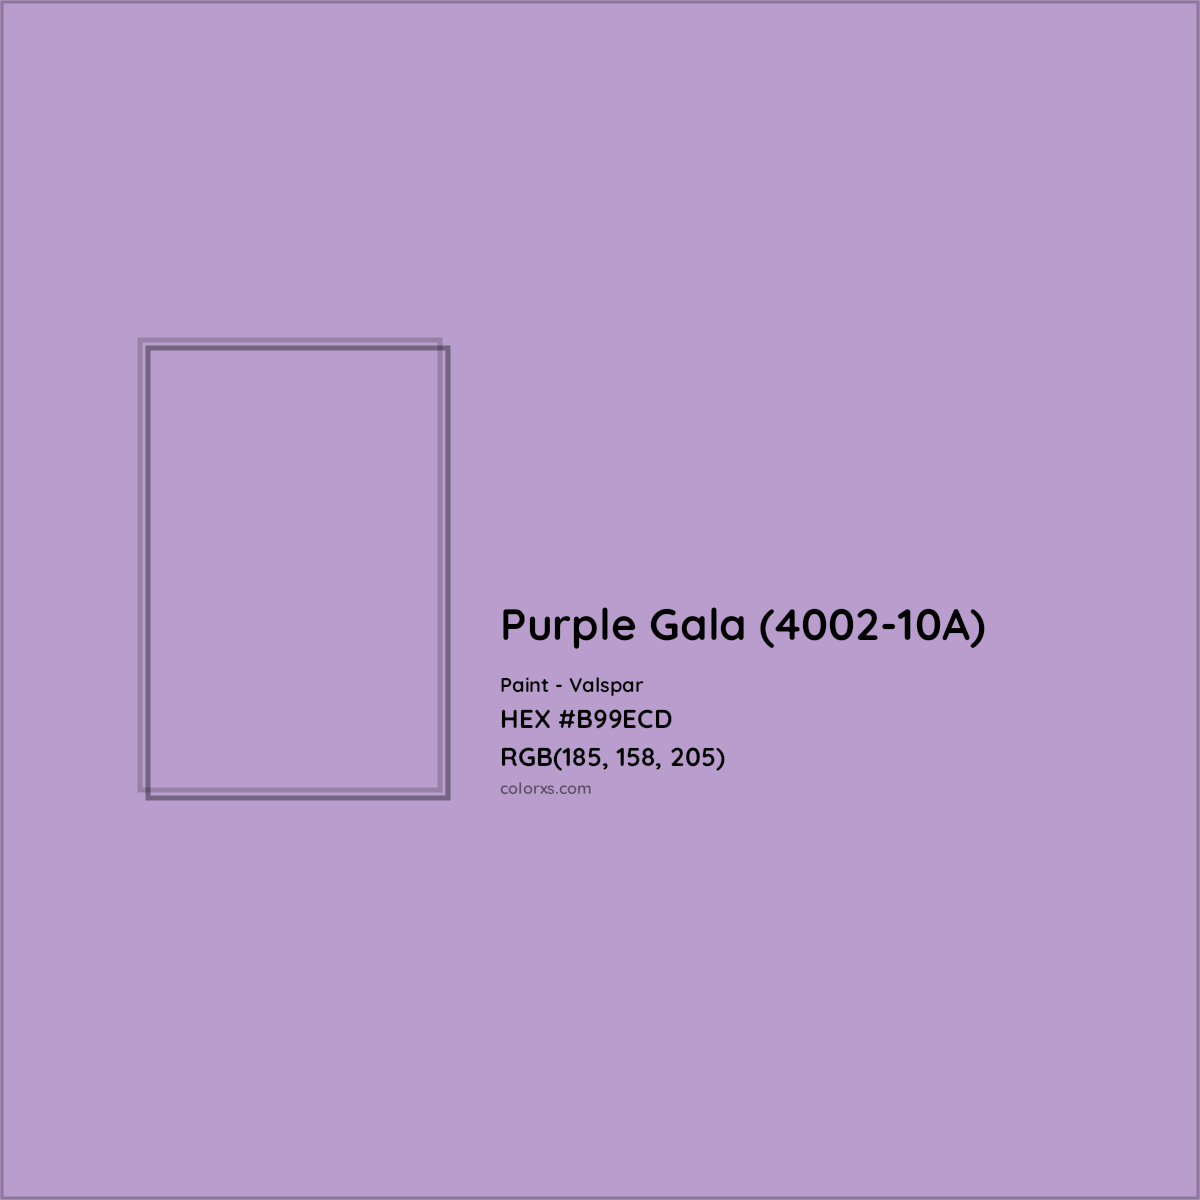 HEX #B99ECD Purple Gala (4002-10A) Paint Valspar - Color Code